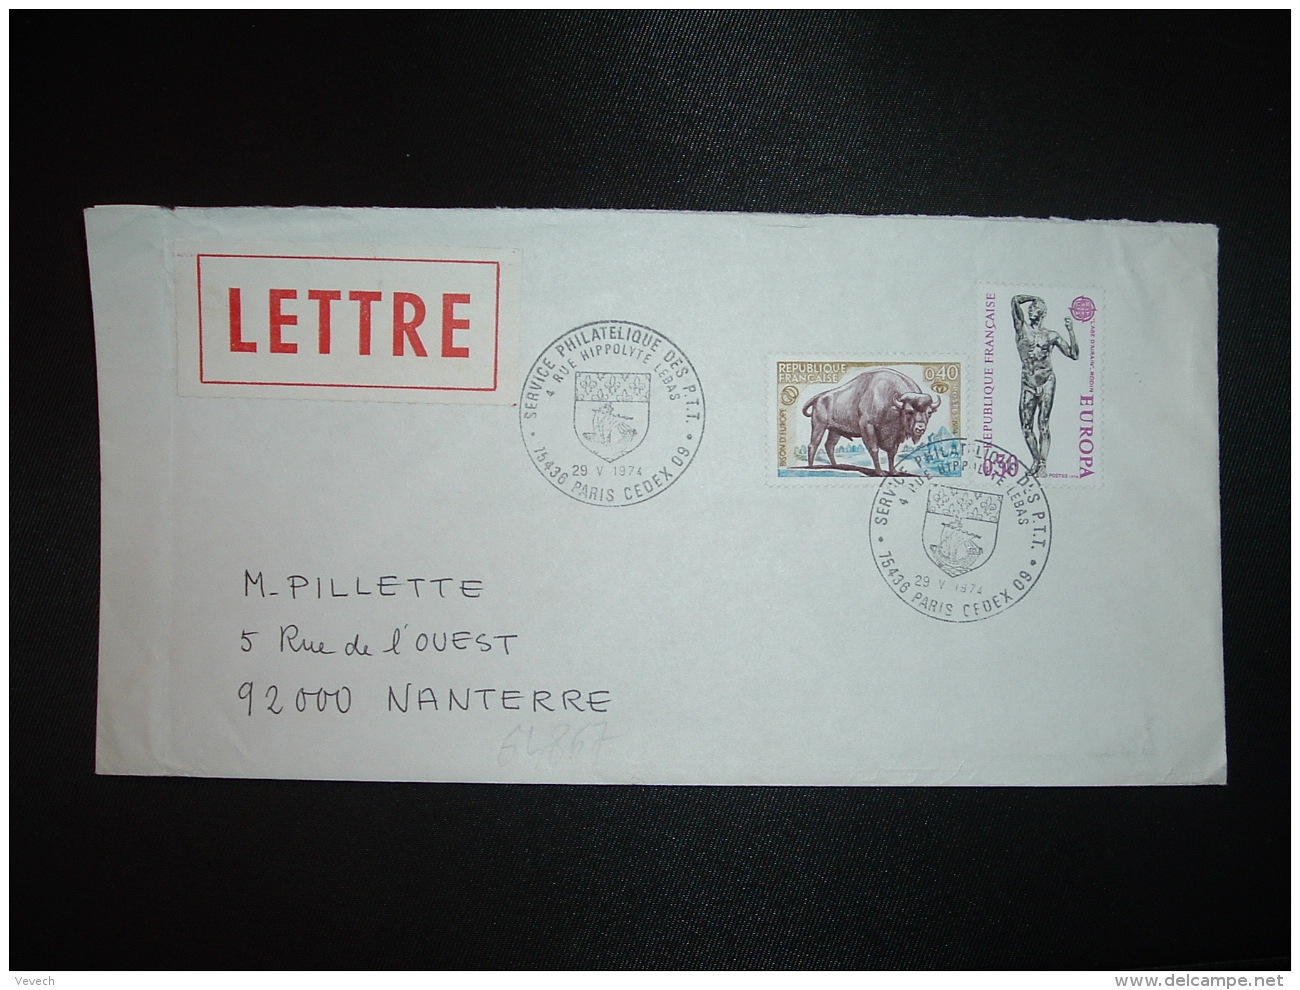 LETTRE TP EUROPA 0,50 + BISON D'EUROPE 0,40 OBL.29 V 1974 PARIS CEDEX 09 SERVICE PHILATELIQUE DES PTT - Tarifs Postaux